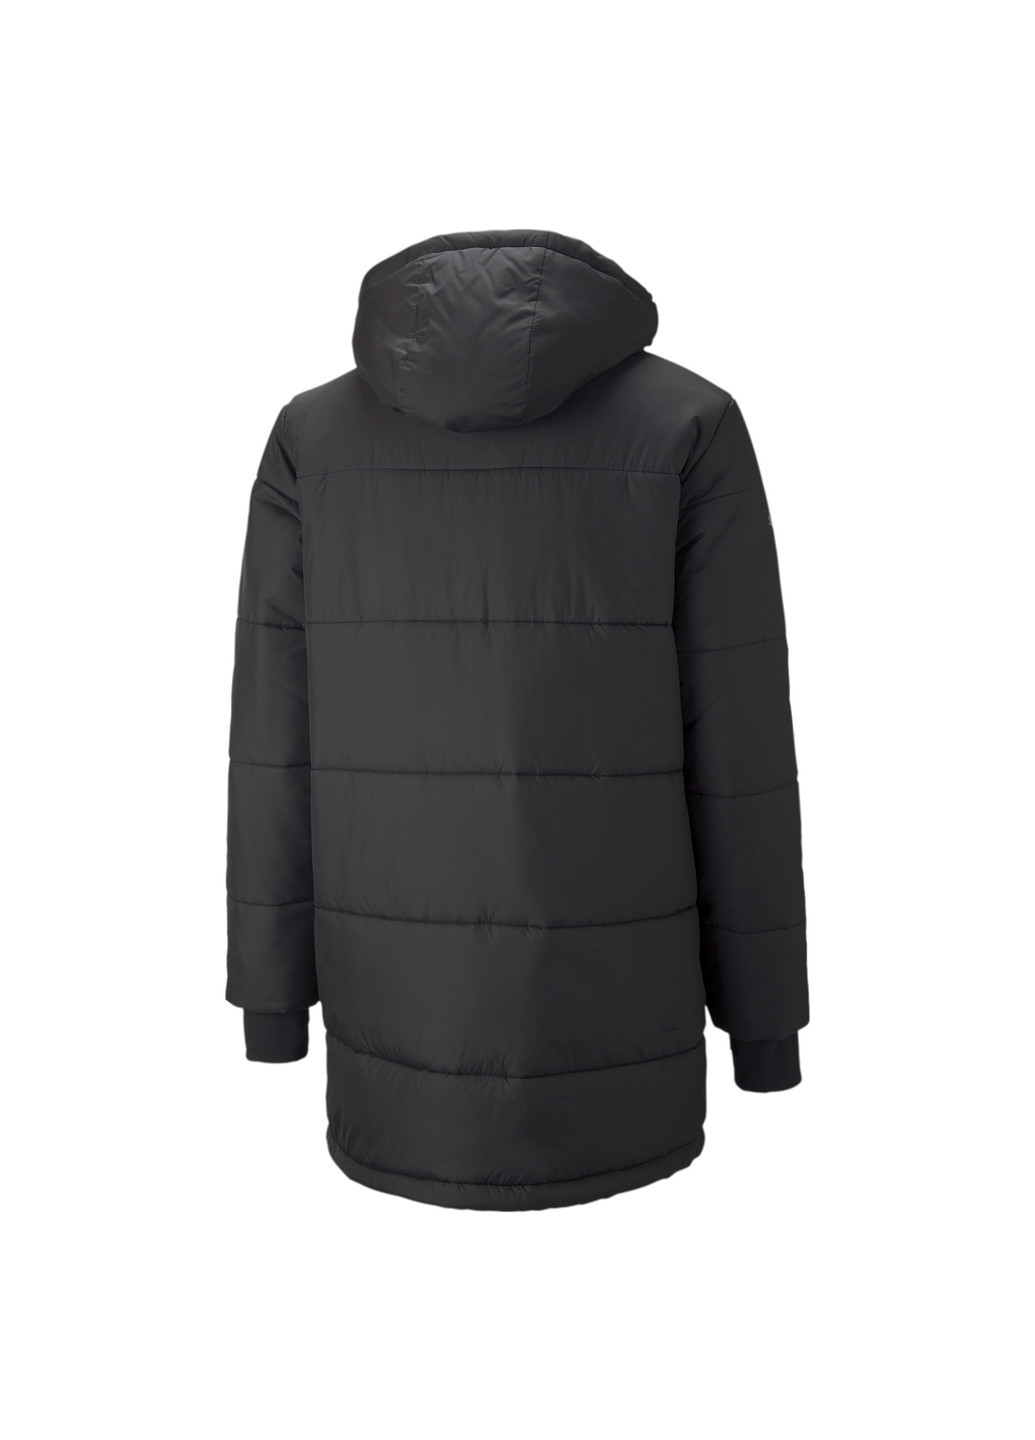 Черная демисезонная куртка bmw m motorsport life winter jacket men Puma